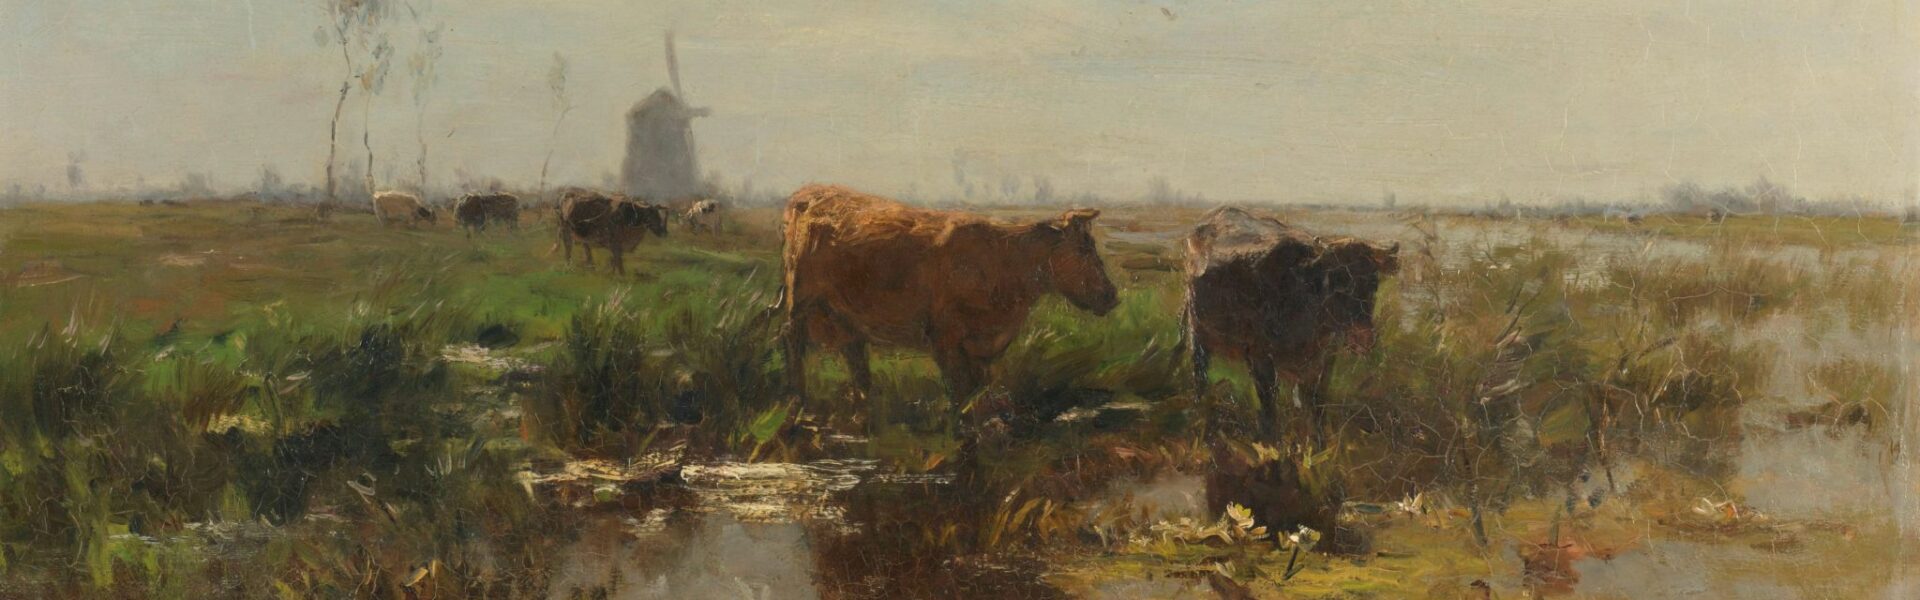 Willem Maris, Weide met koeien aan het water ca 1900 olieverf op doek collectie Rijksmuseum